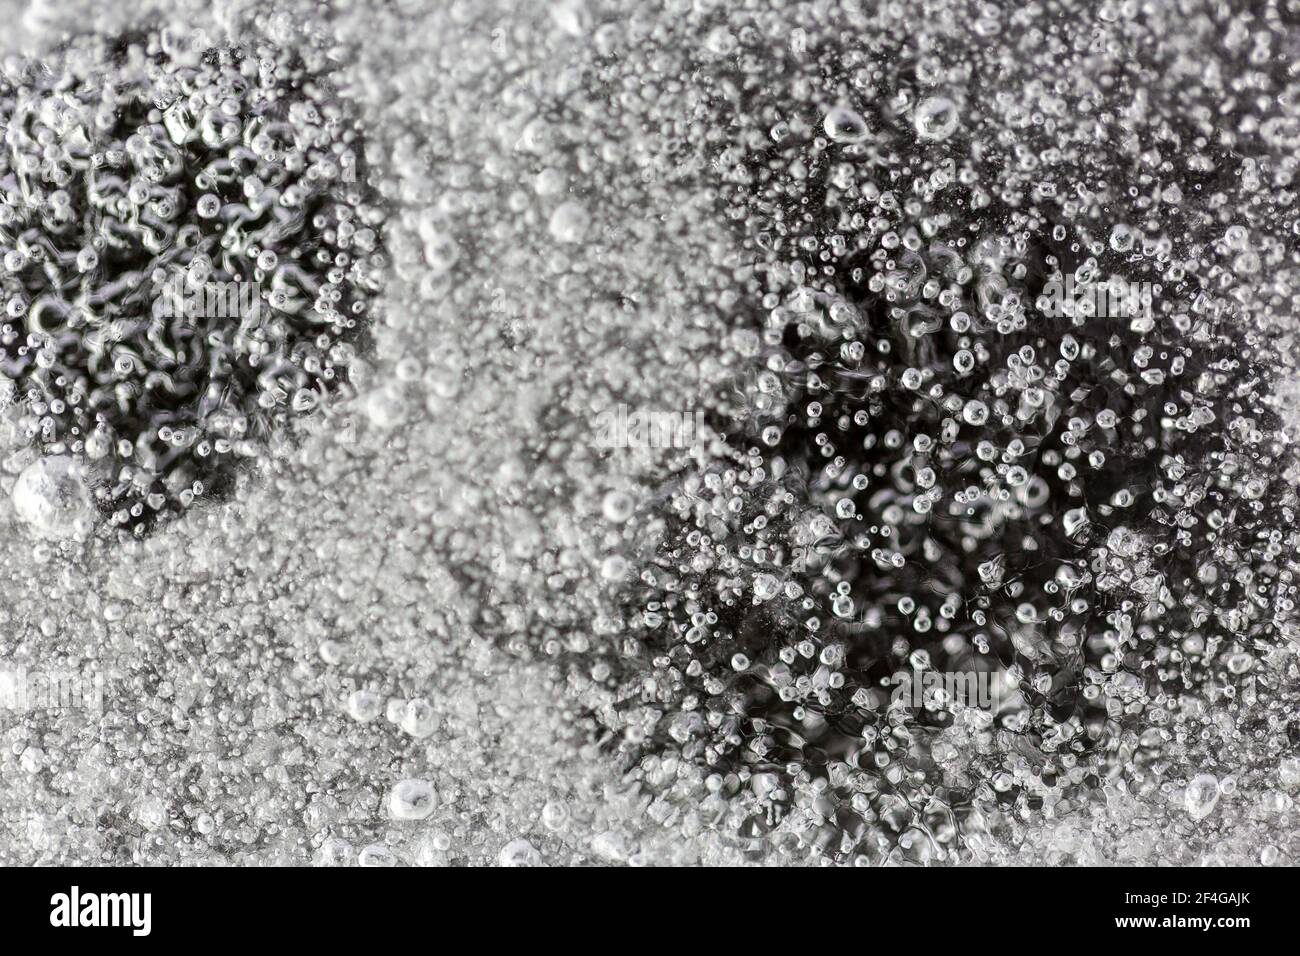 Photo macro de petites bulles d'air piégées dans une feuille de glace dans le jardin, prise avec un flash stroboscopique pour éclairer la glace Banque D'Images